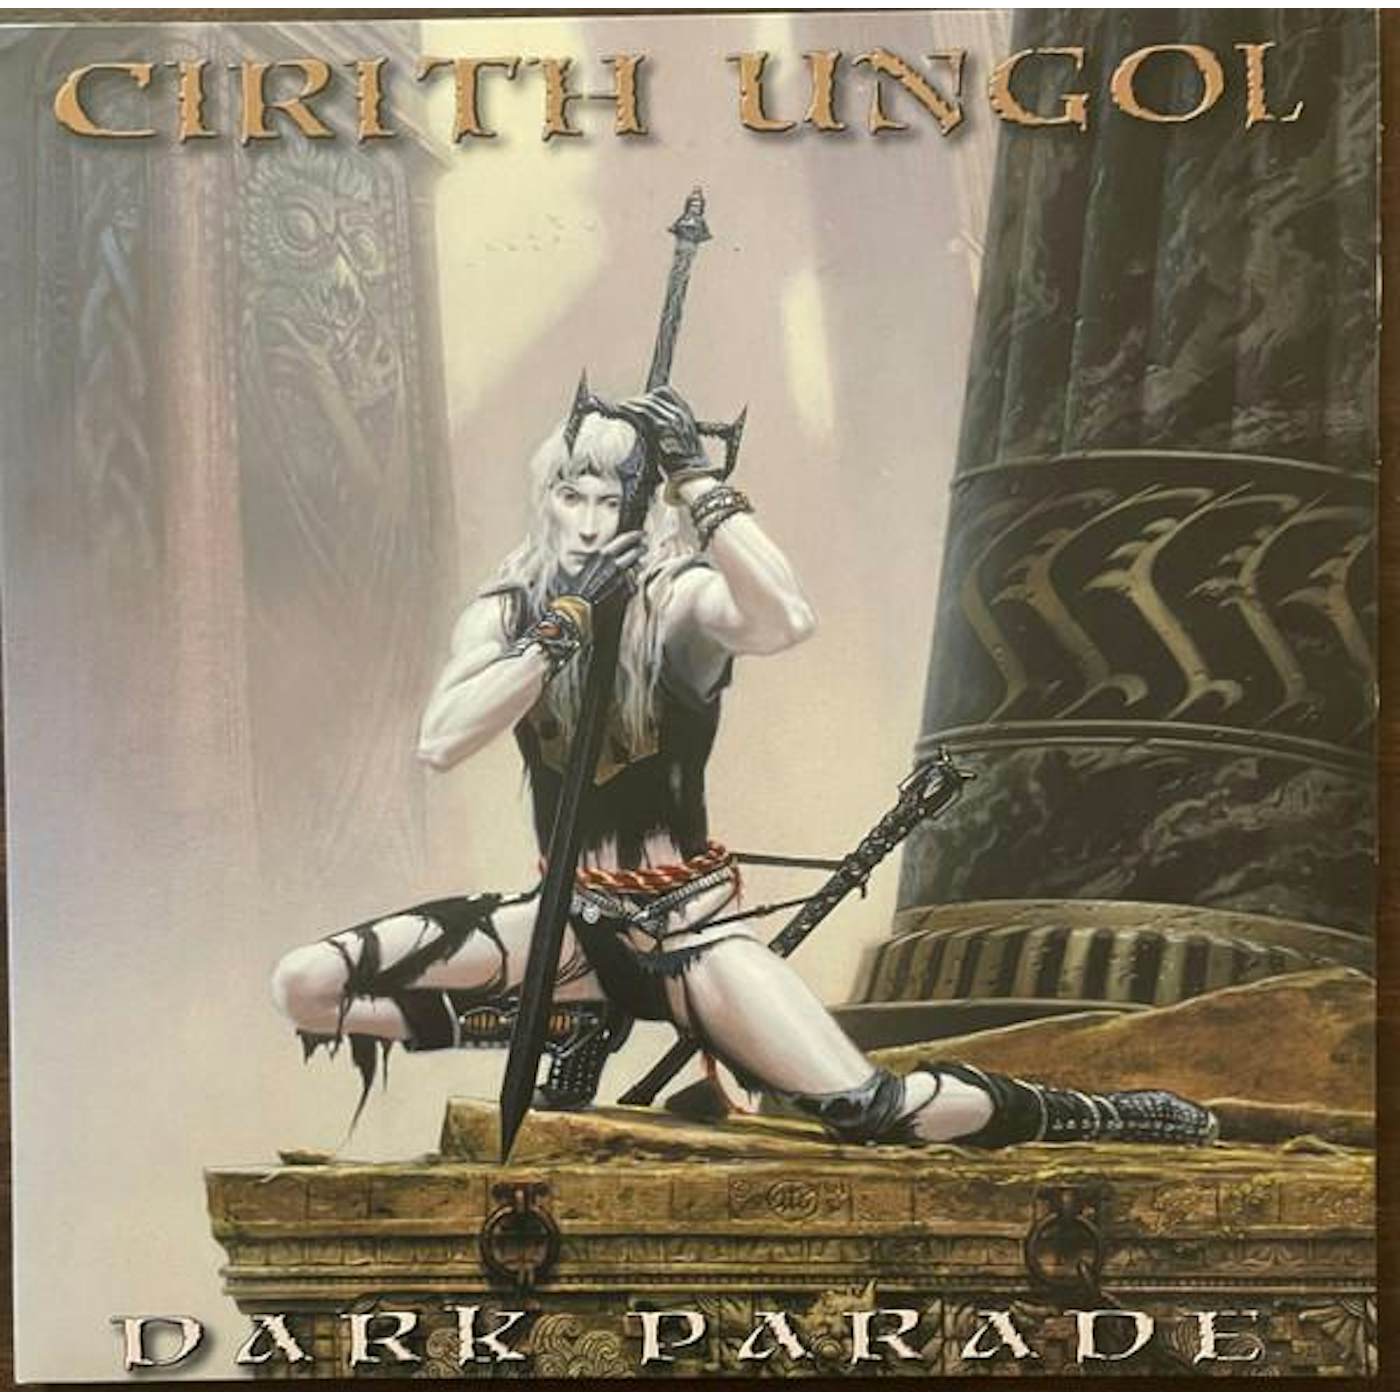 Cirith Ungol DARK PARADE Vinyl Record